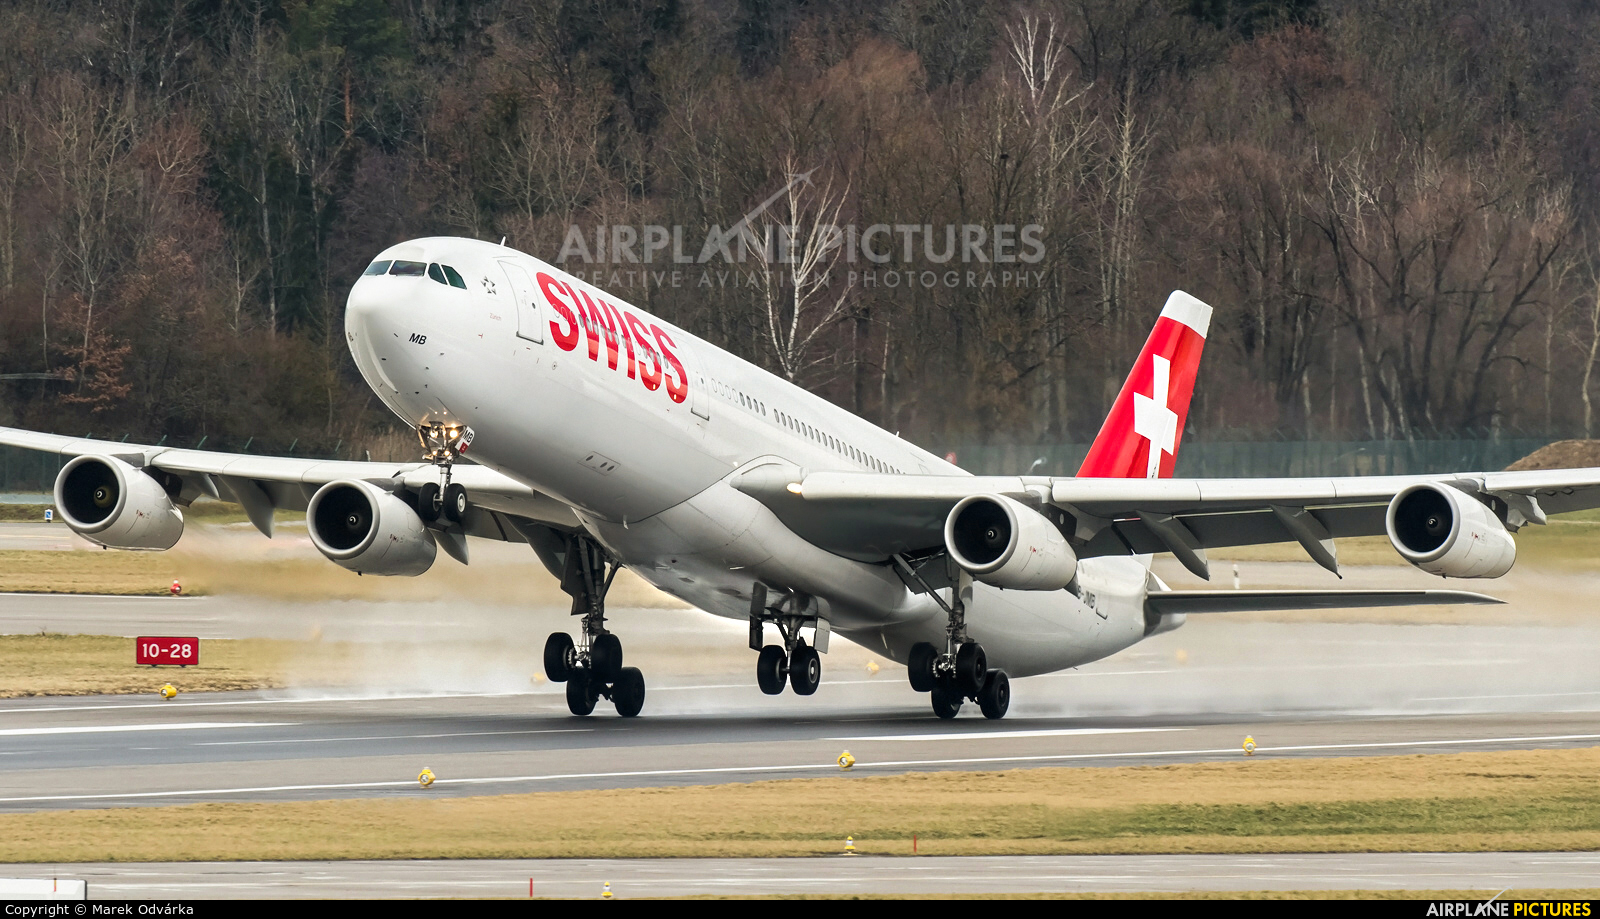 HB-JMB - Swiss Airbus A340-300 at Zurich | Photo ID 1161380 